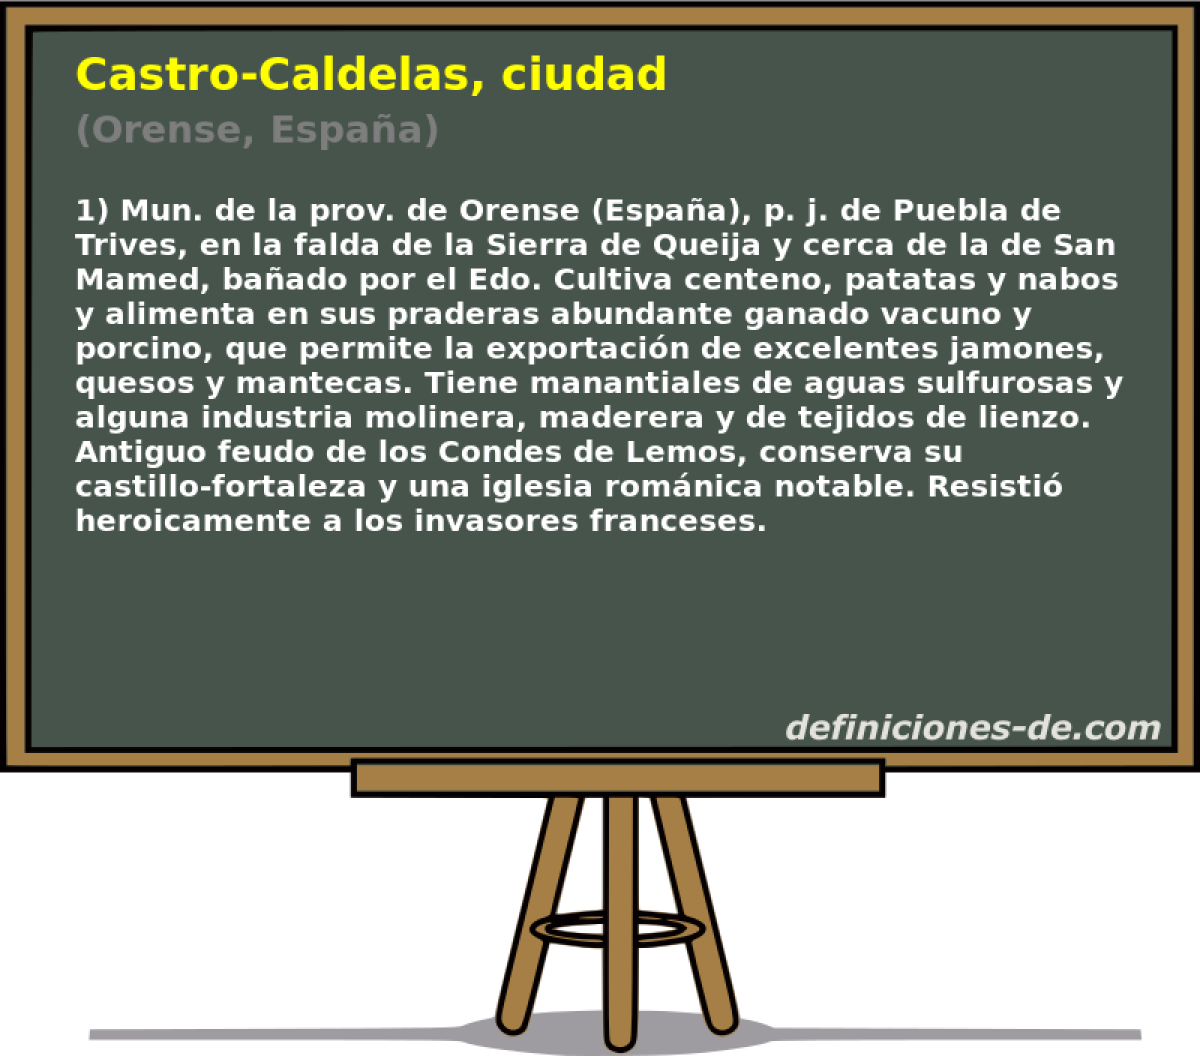 Castro-Caldelas, ciudad (Orense, Espaa)